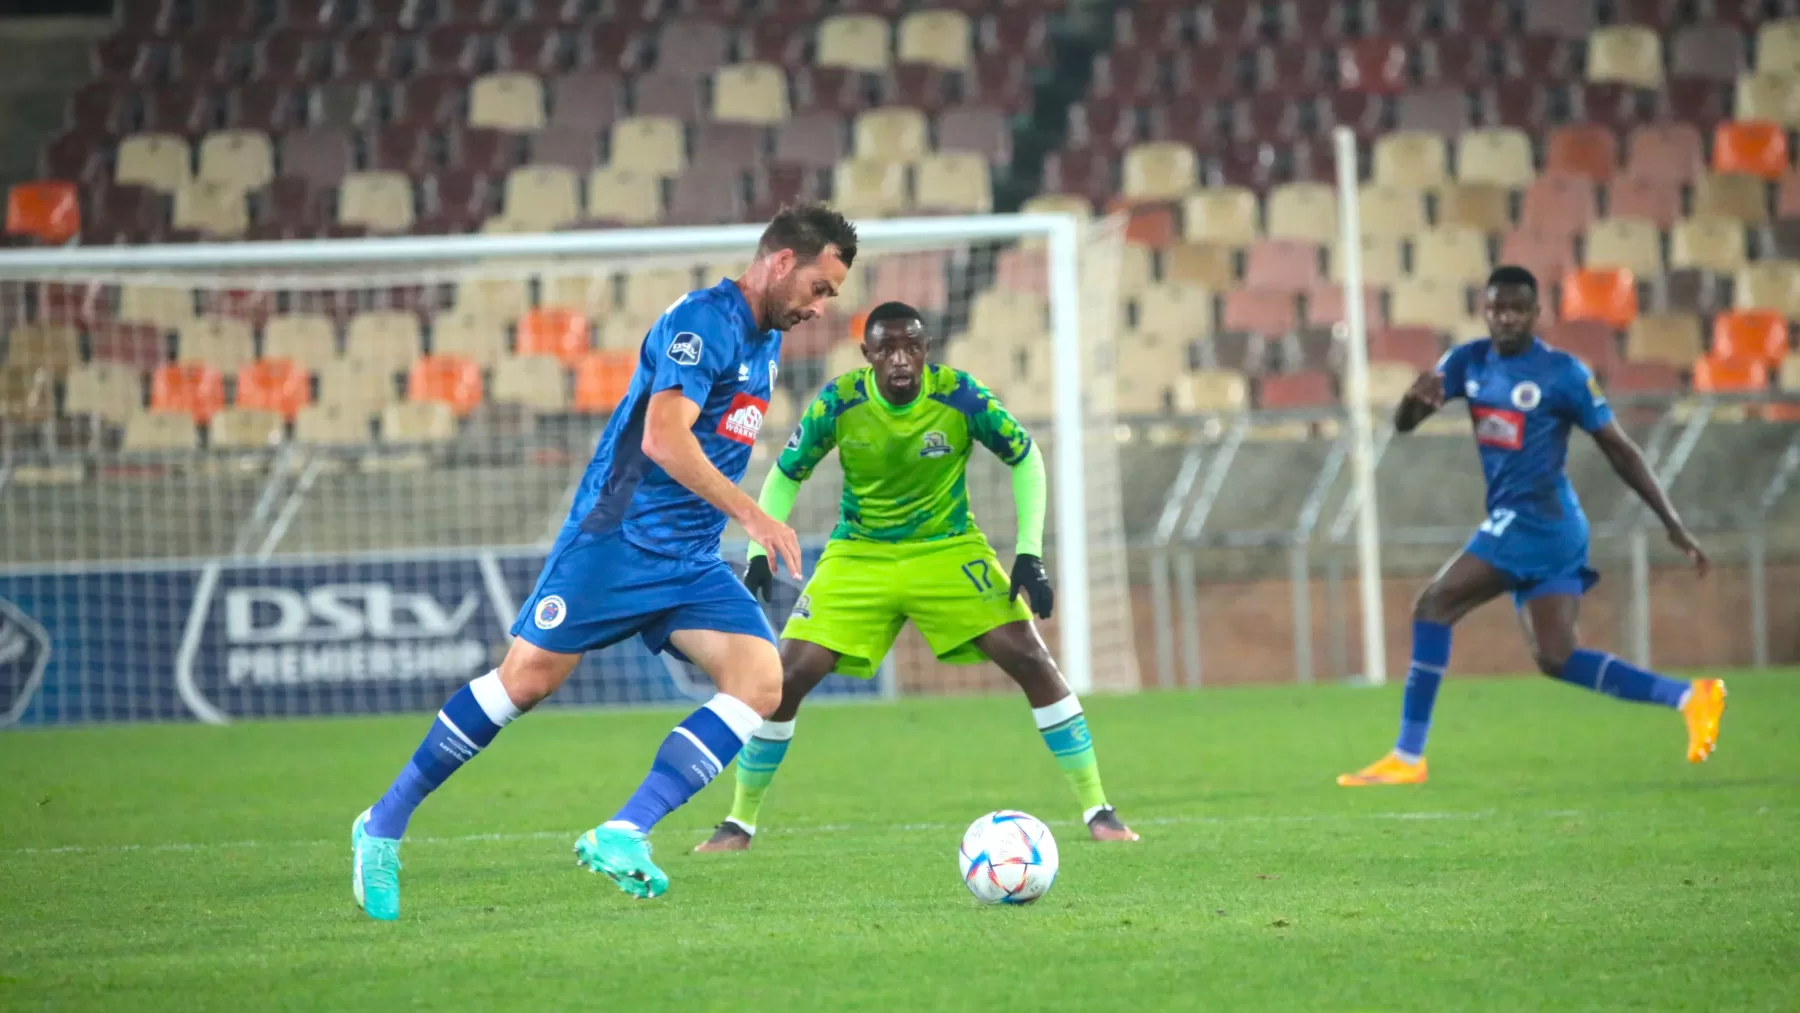 Gavin Hunt reckons SuperSport United deserves CAF Champions League spot